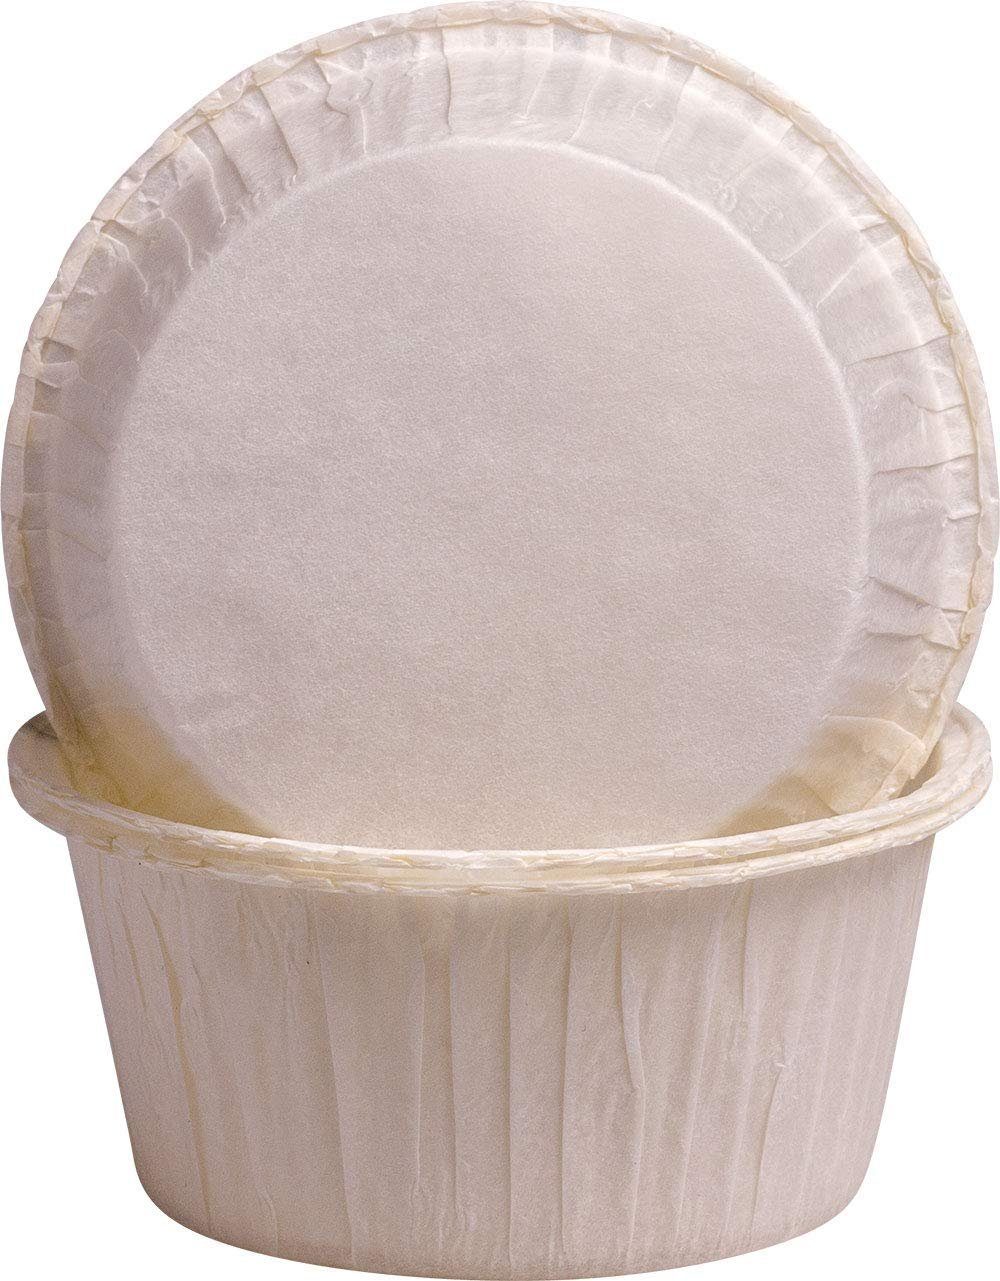 Demmler Muffinform 5032800250, 250 Backförmchen in weiß, zum backen von Cupcakes, Muffins und mehr - Made in Germany | Muffinformen